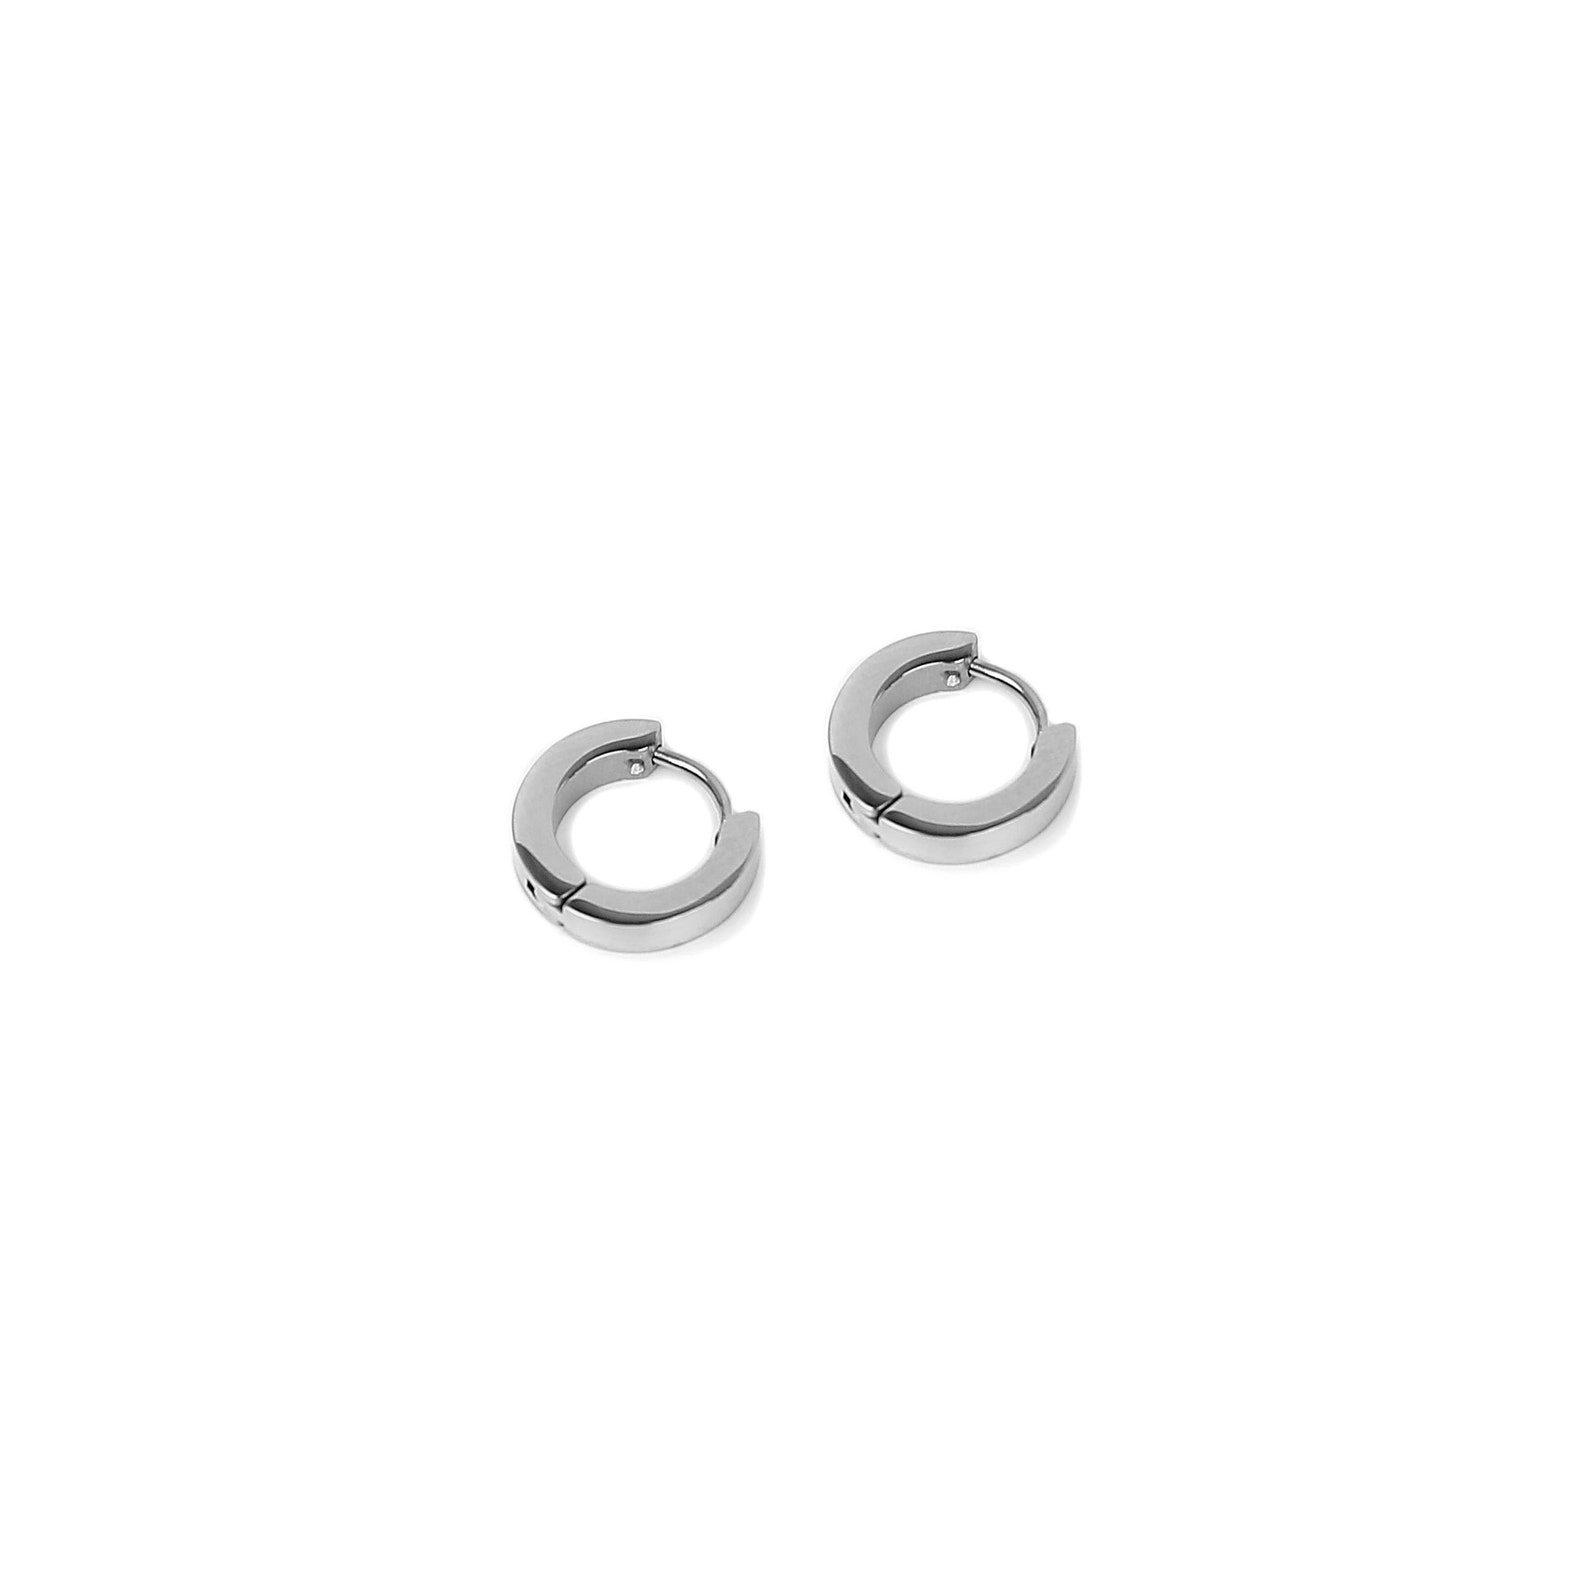 Men's Earring 3mm Round Earring Stainless Steel | Etsy